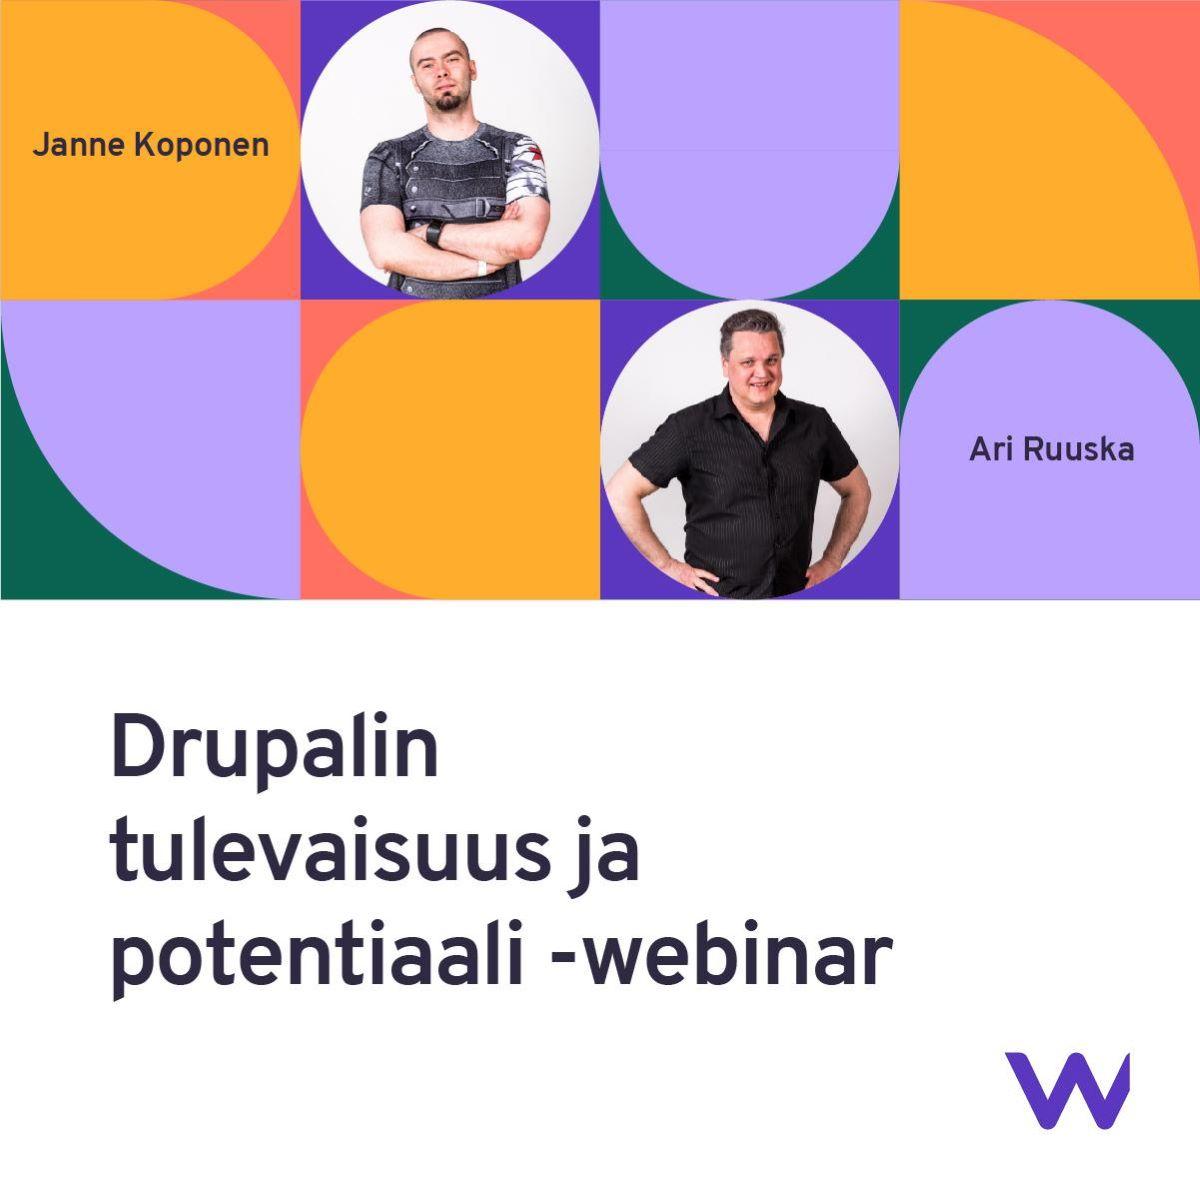 Janne Koponen ja Ari Ruuska Drupal webinarin ilmoituksessa.